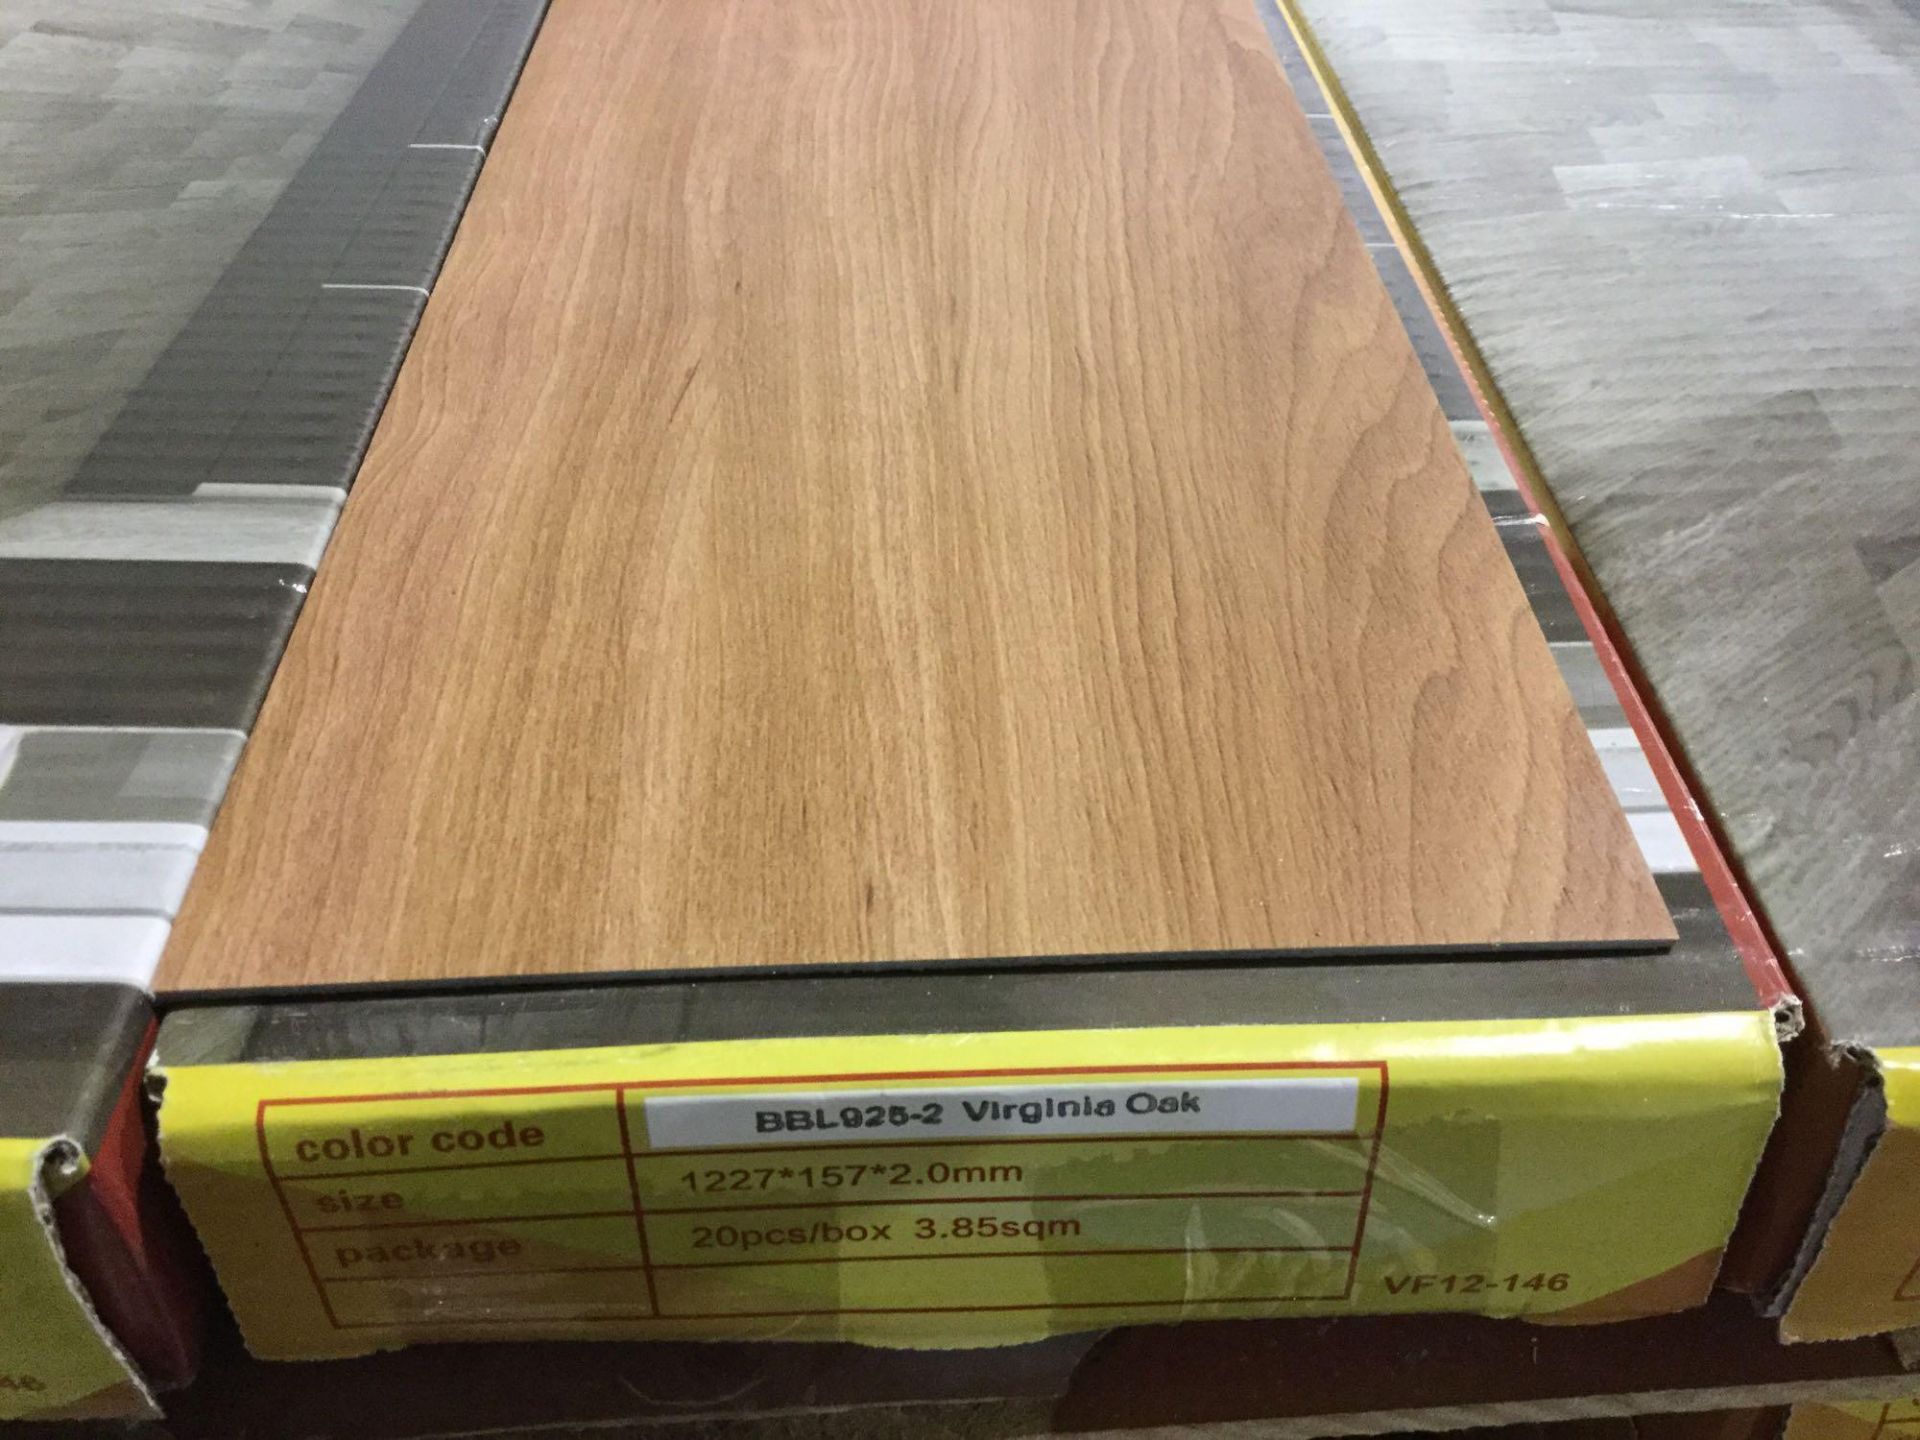 2mm Vinyl Plank Flooring - Virginia Oak 43 Sq ft/box - Image 3 of 3